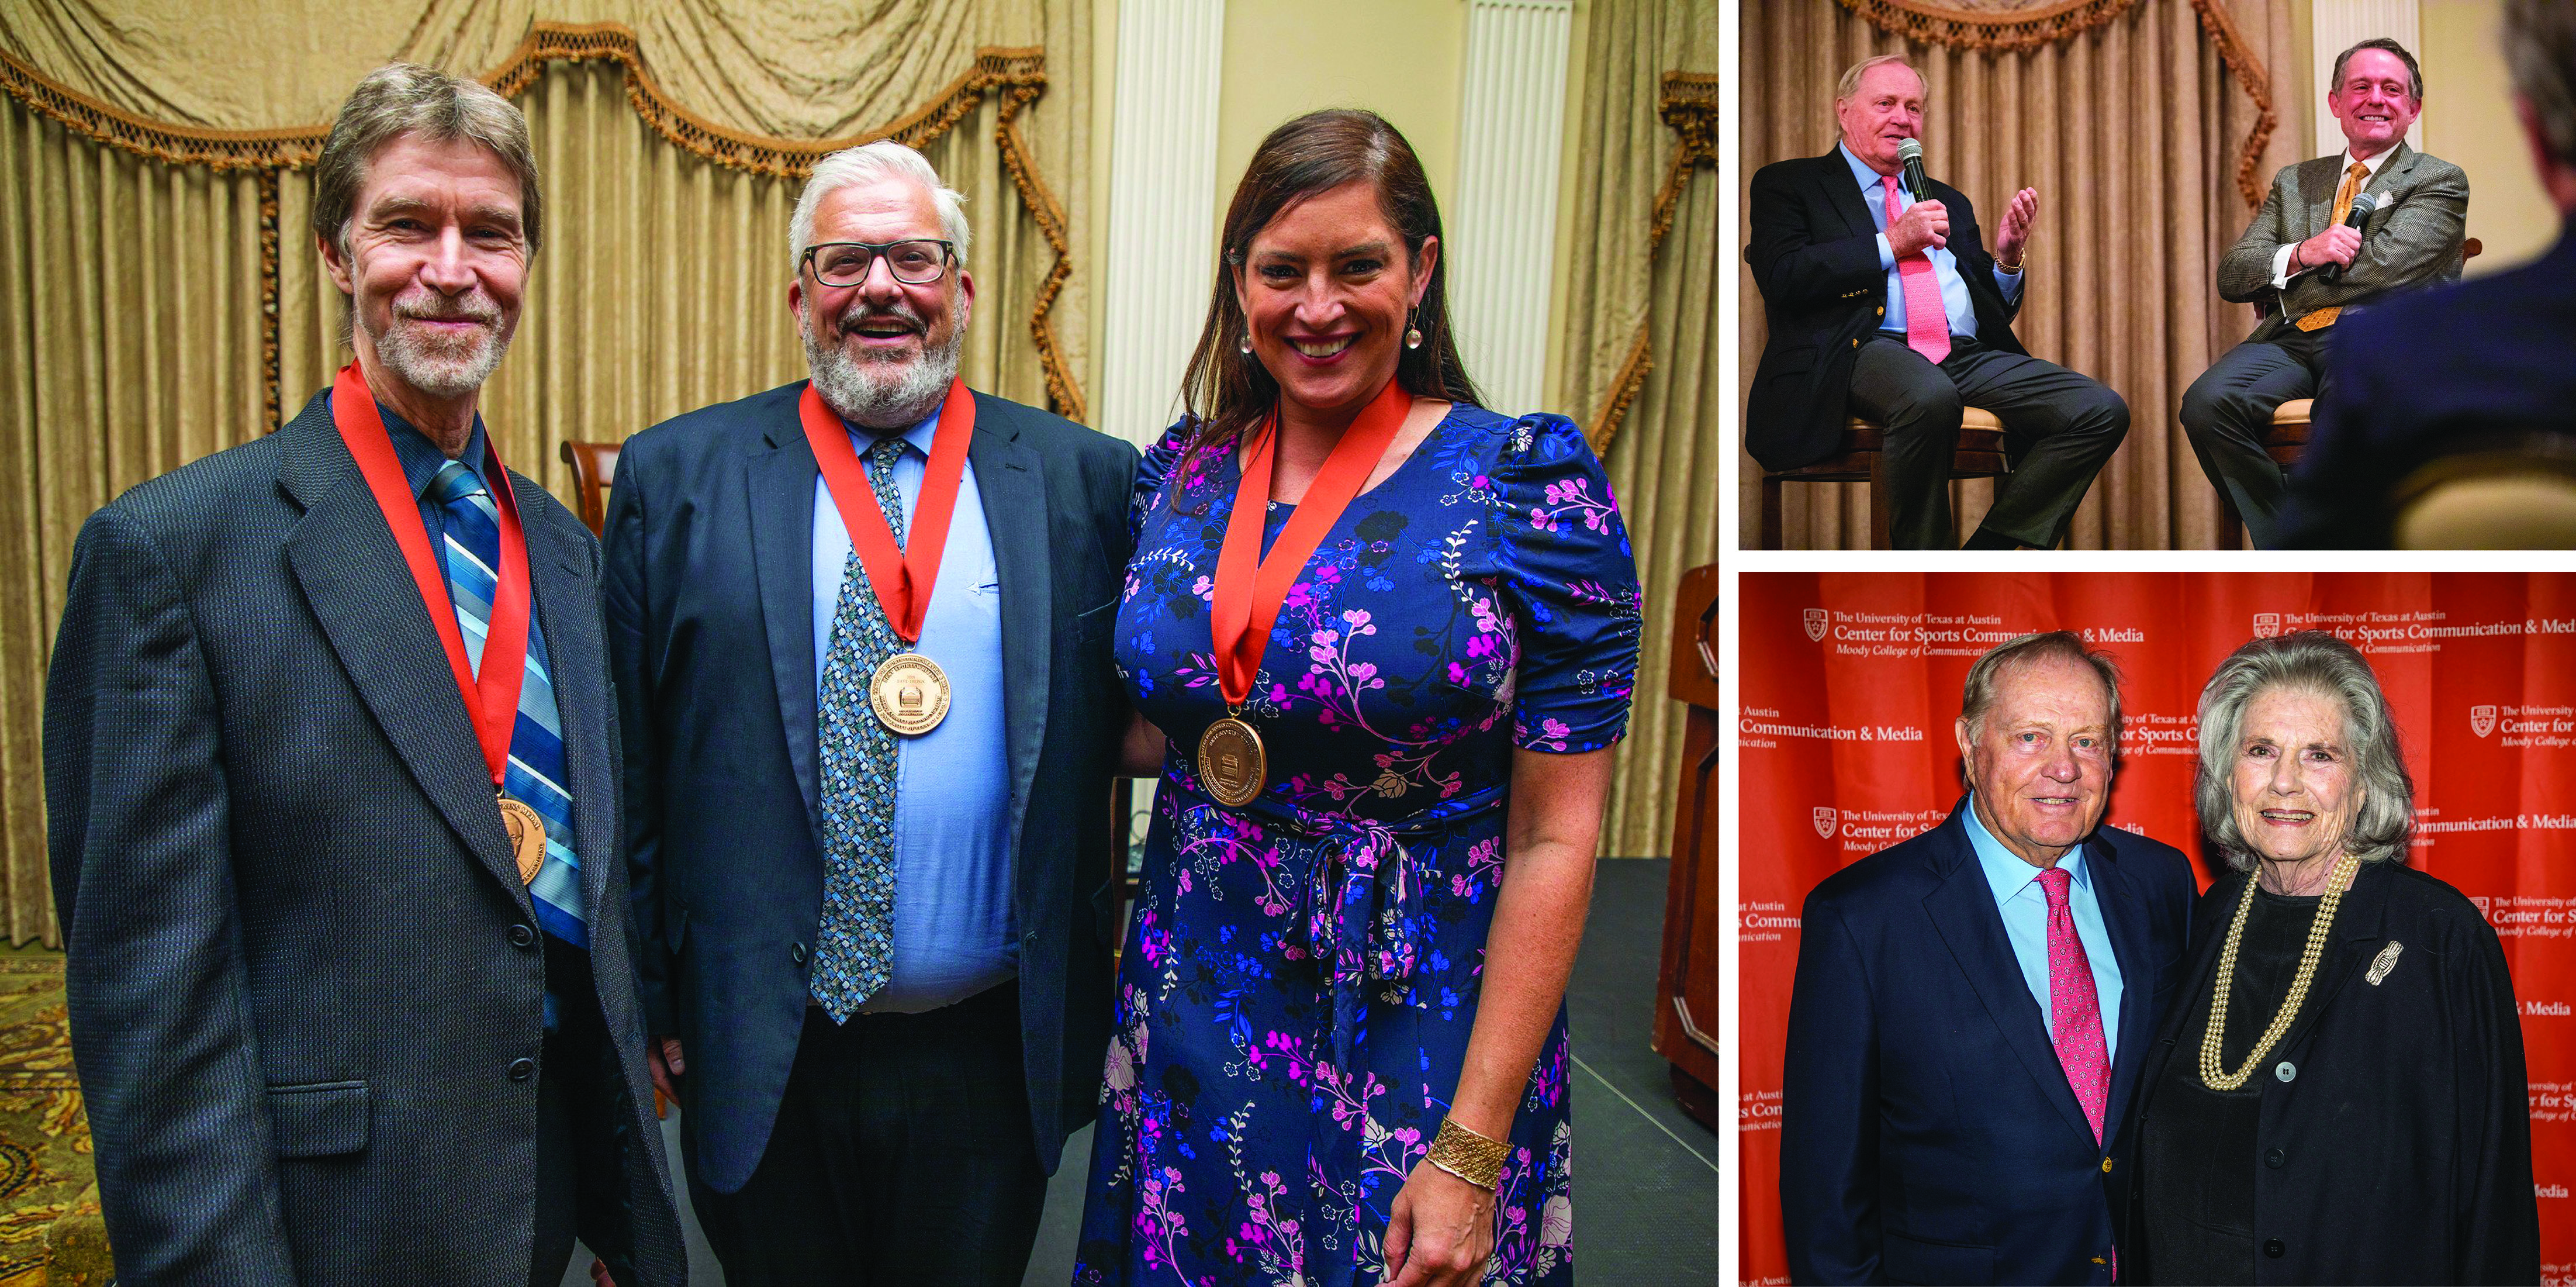 2019 Jenkins Medal awards dinner